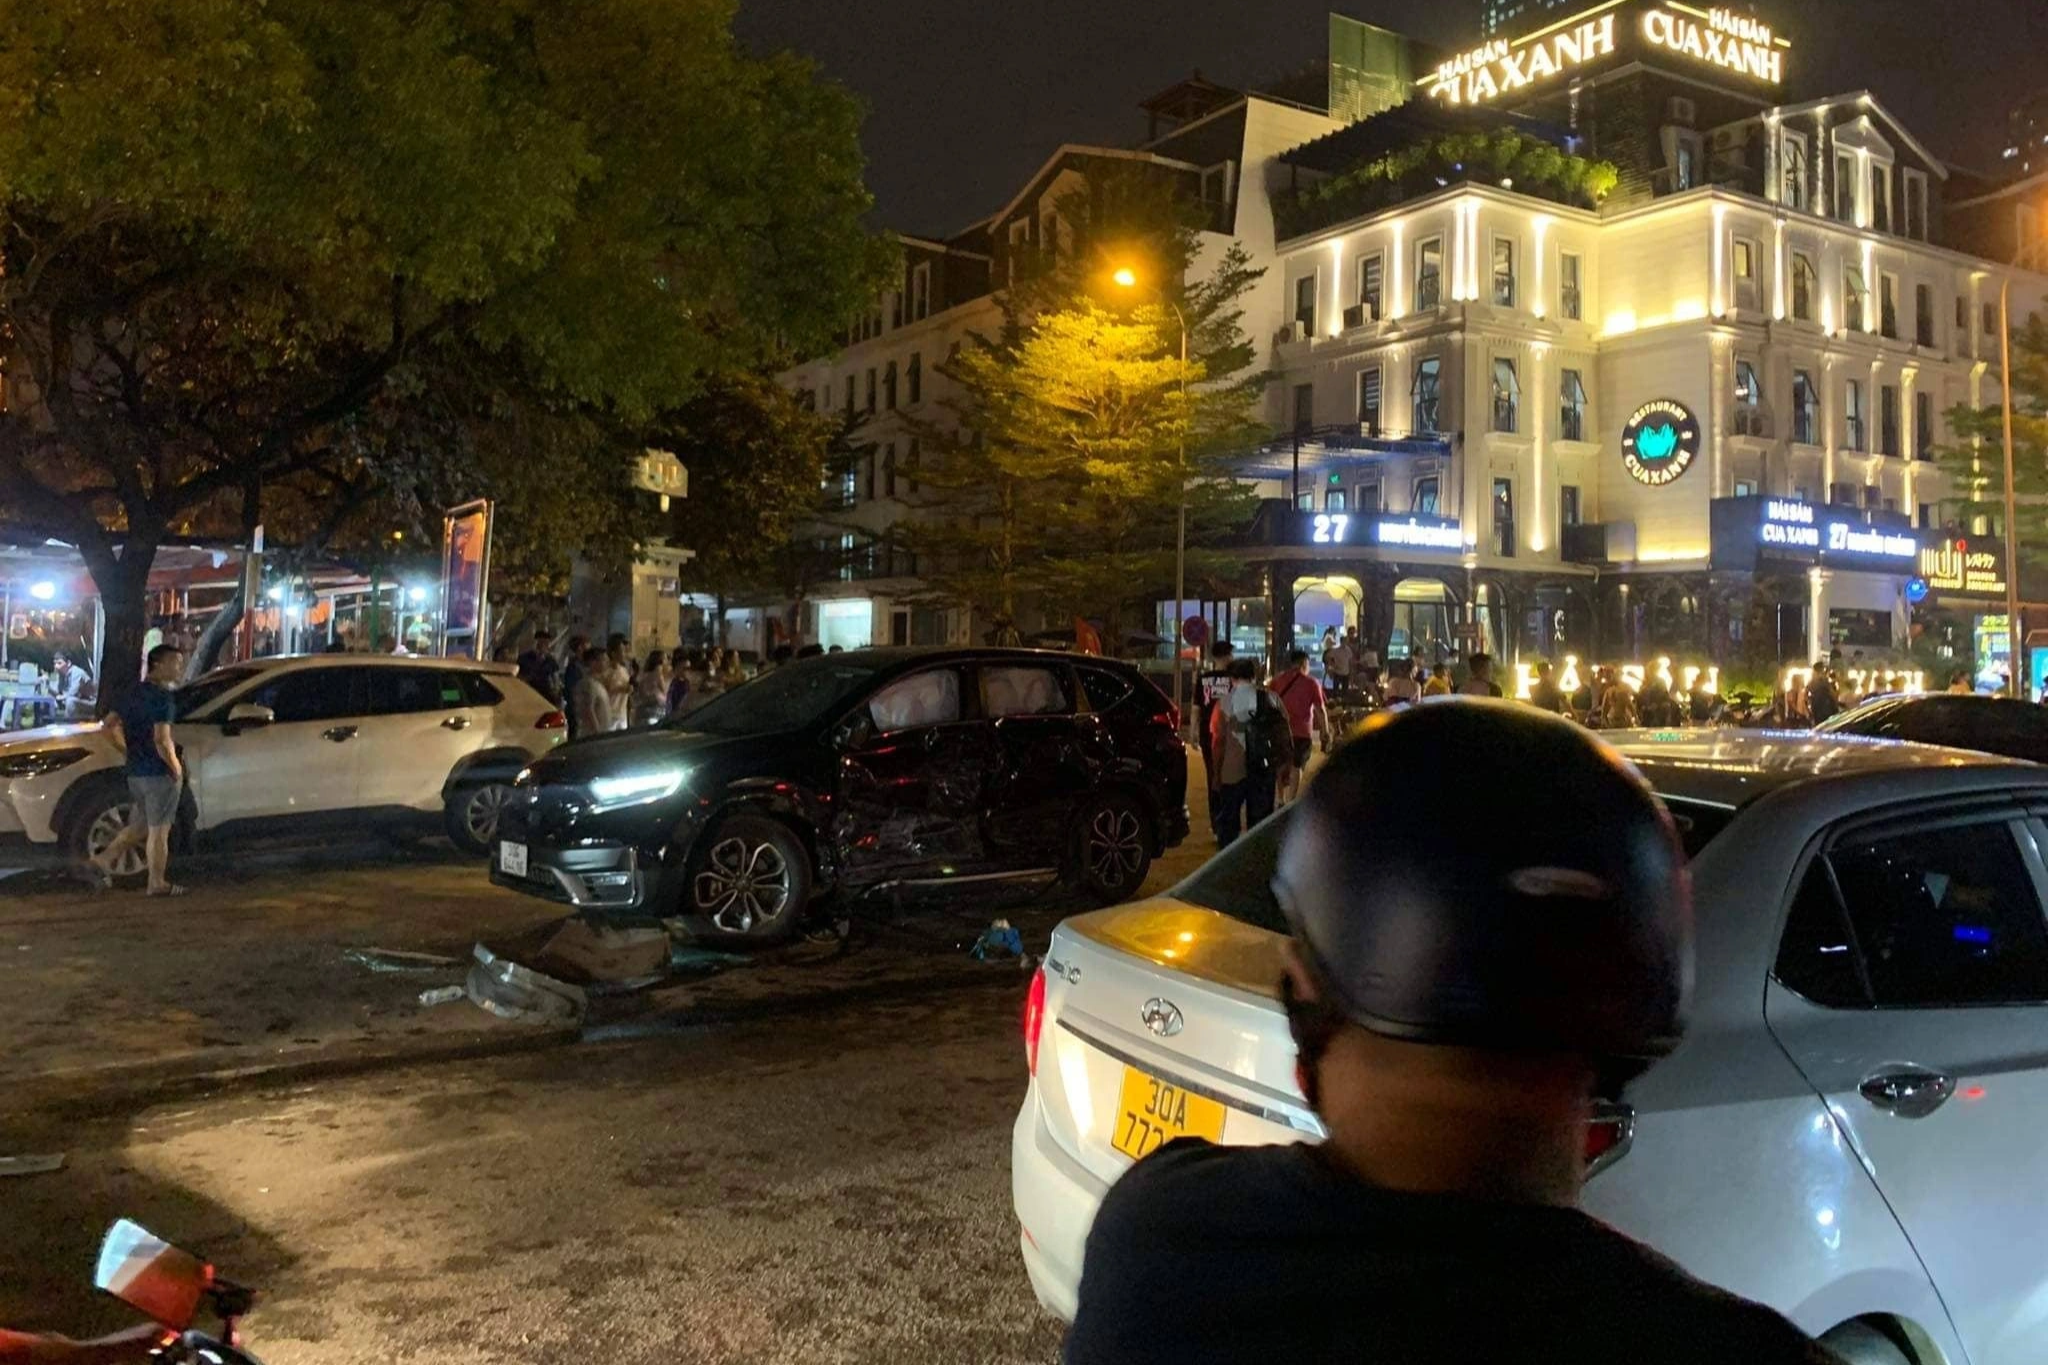 Tài xế gây tai nạn liên hoàn trên phố Hà Nội là giảng viên đại học - 1